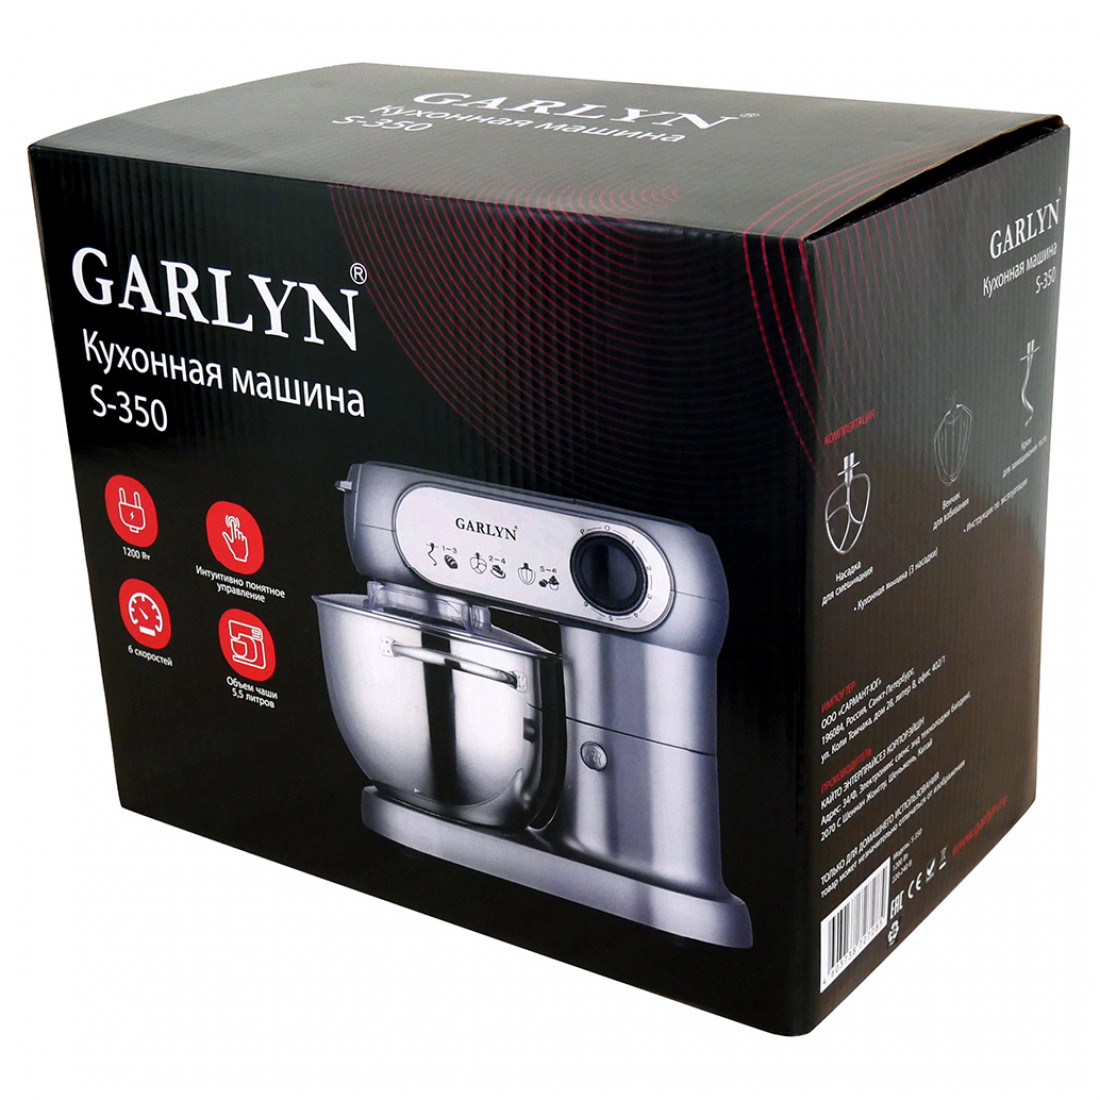 Garlyn barista compact отзывы. Кухонная машина Garlyn s-350. Гарлин комбайн кухонный s350. Планетарный миксер Garlyn s-350. Garlyn s-350, 1200 Вт.